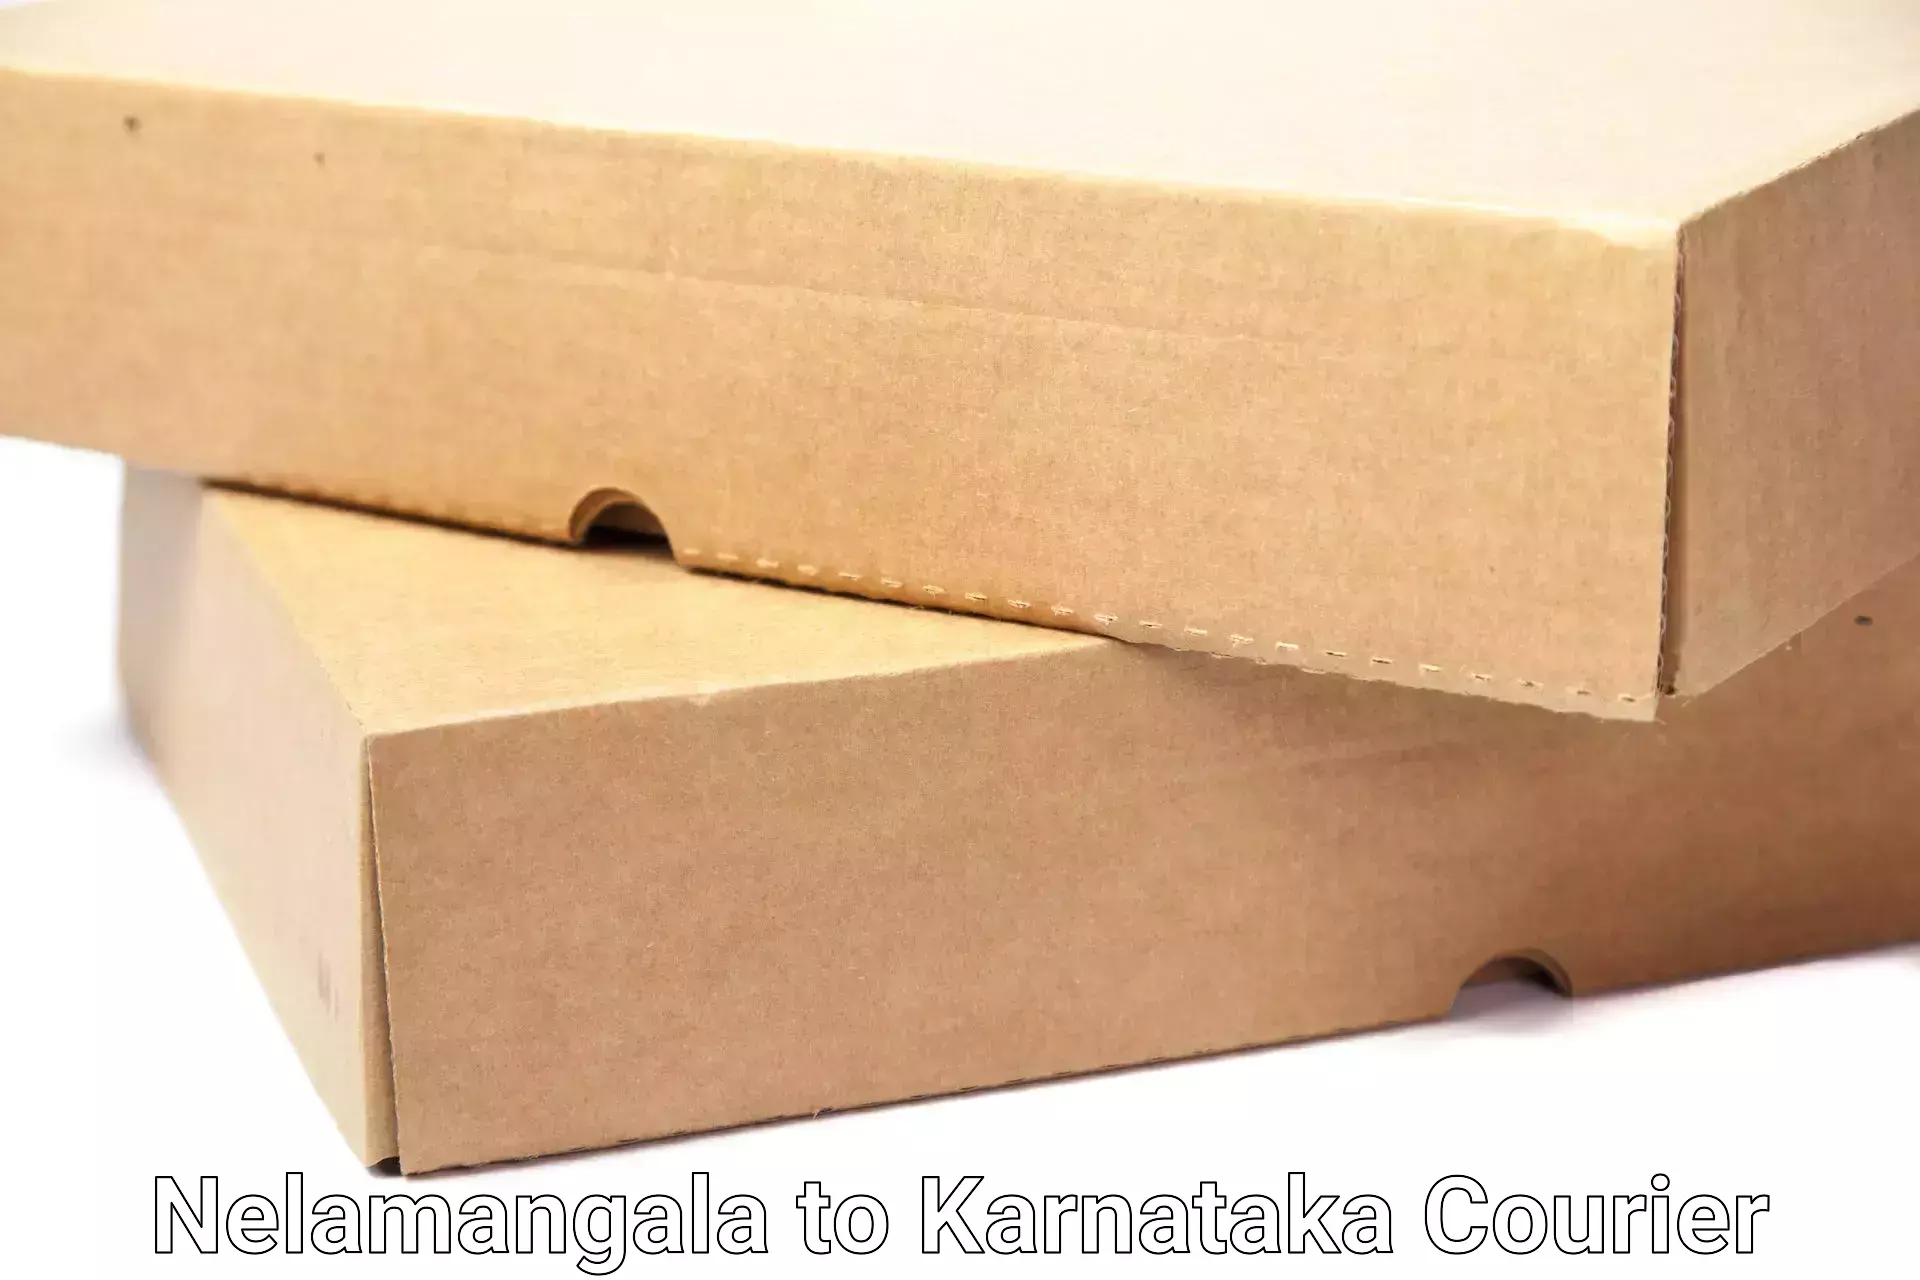 Professional packing services Nelamangala to Mannaekhelli